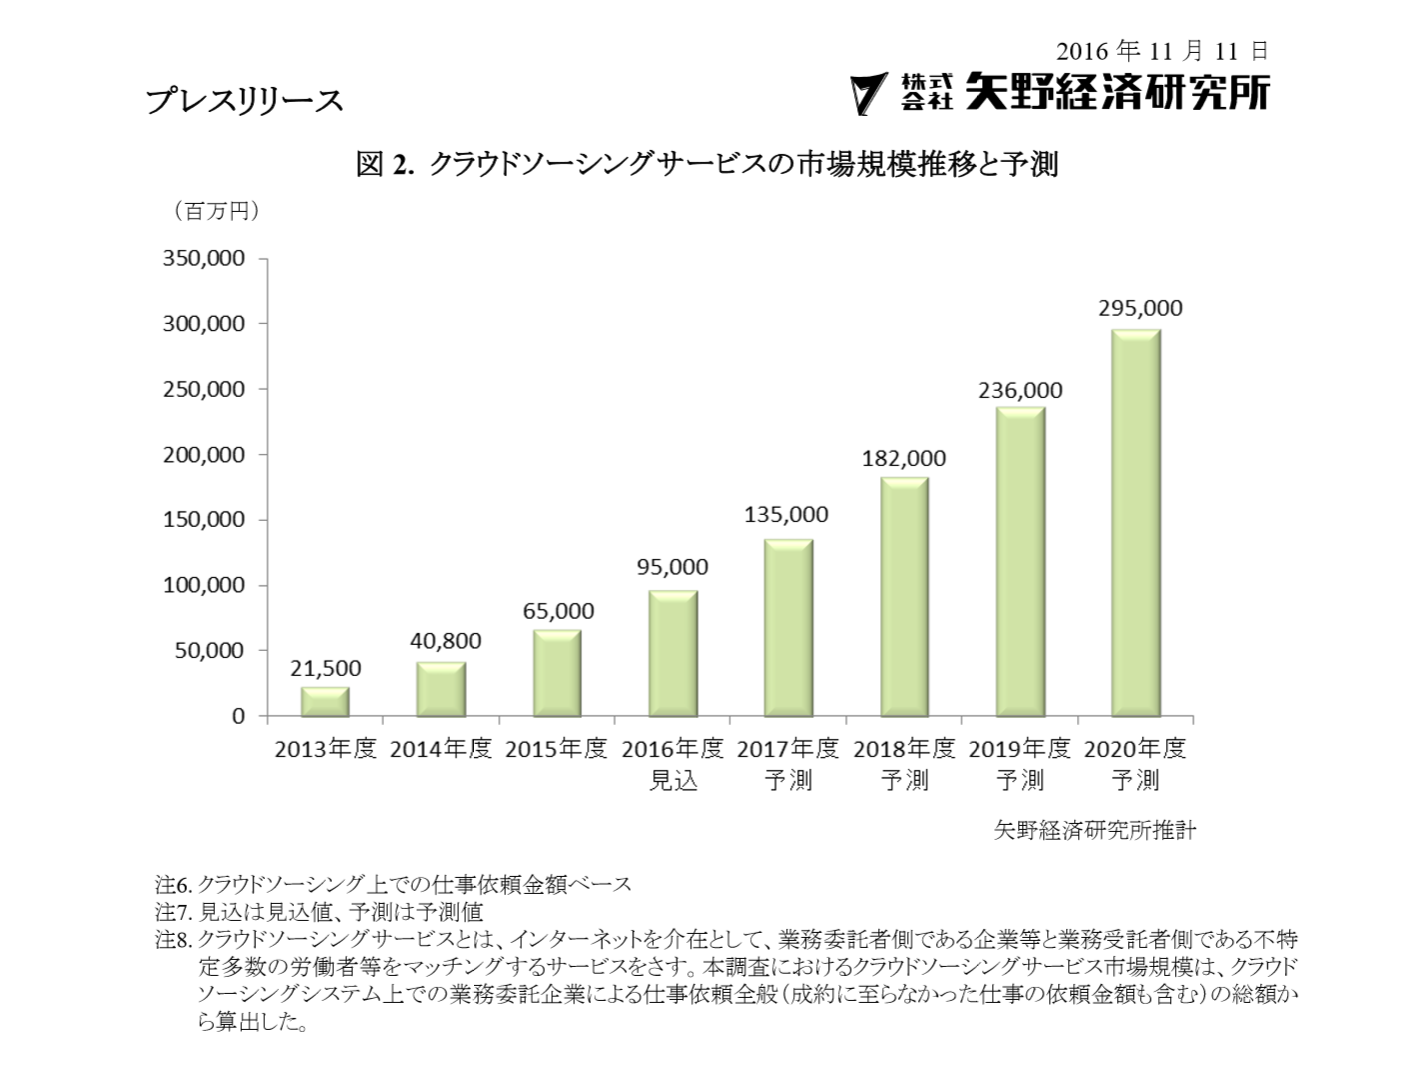 国内クラウドソーシングサービス市場に関する調査 矢野経済研究所 Bpo市場 Crowdsourcing Japan